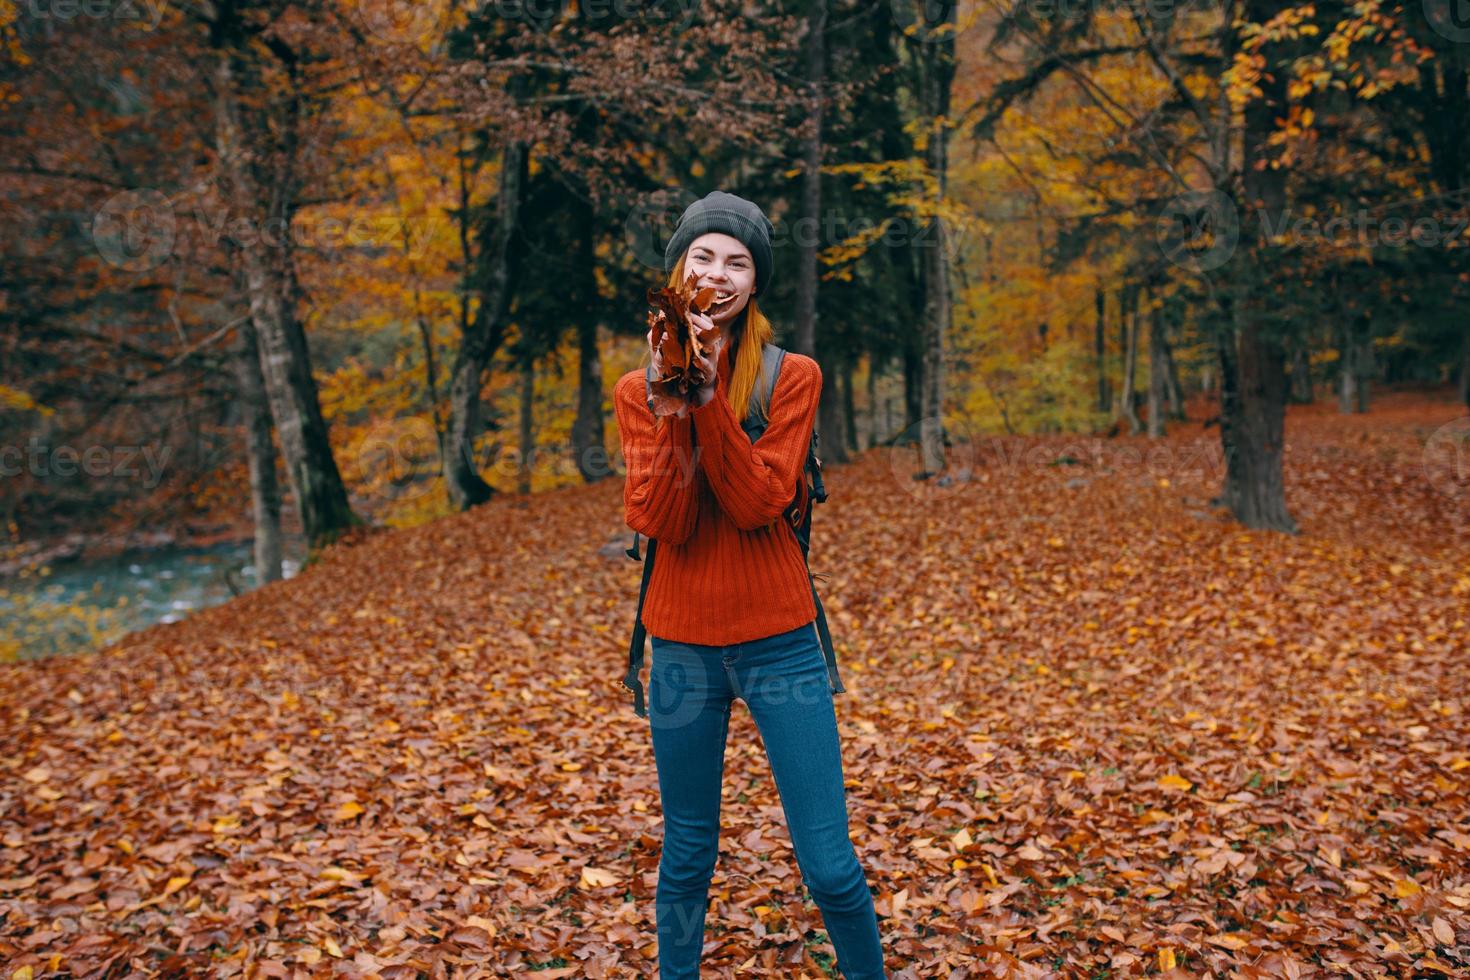 femme dans une chandail chapeau jeans 3 loi sur le retour et la nature dans le Contexte des arbres forêt modèle photo